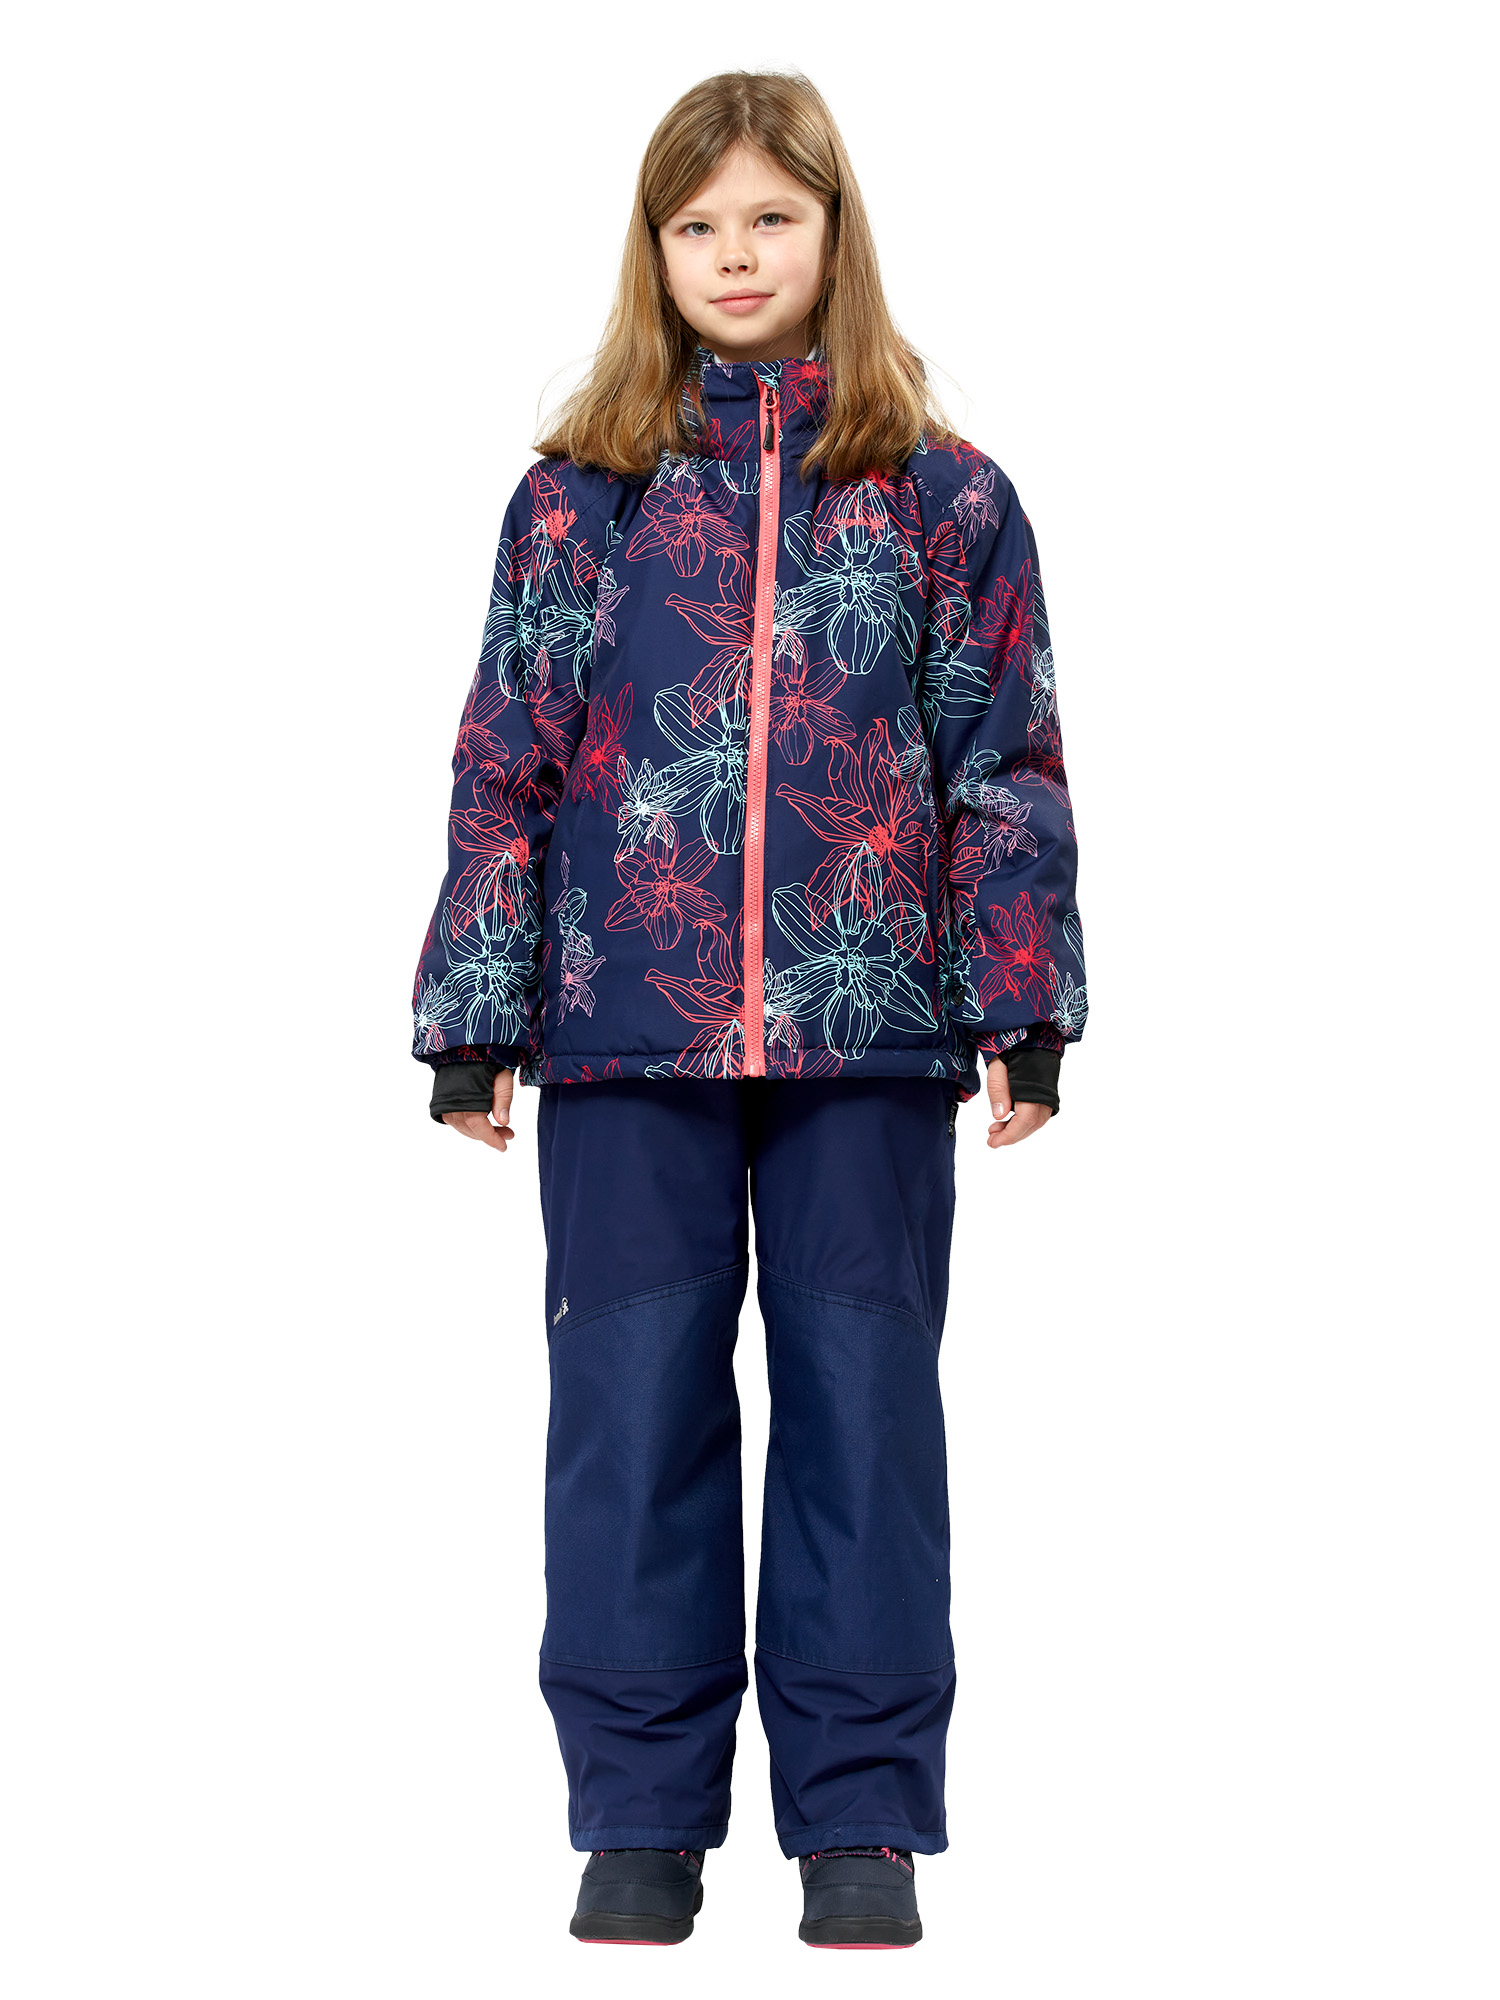 Куртка детская Tallie Leilani2 V46995_Nac, розовый, синий, 110